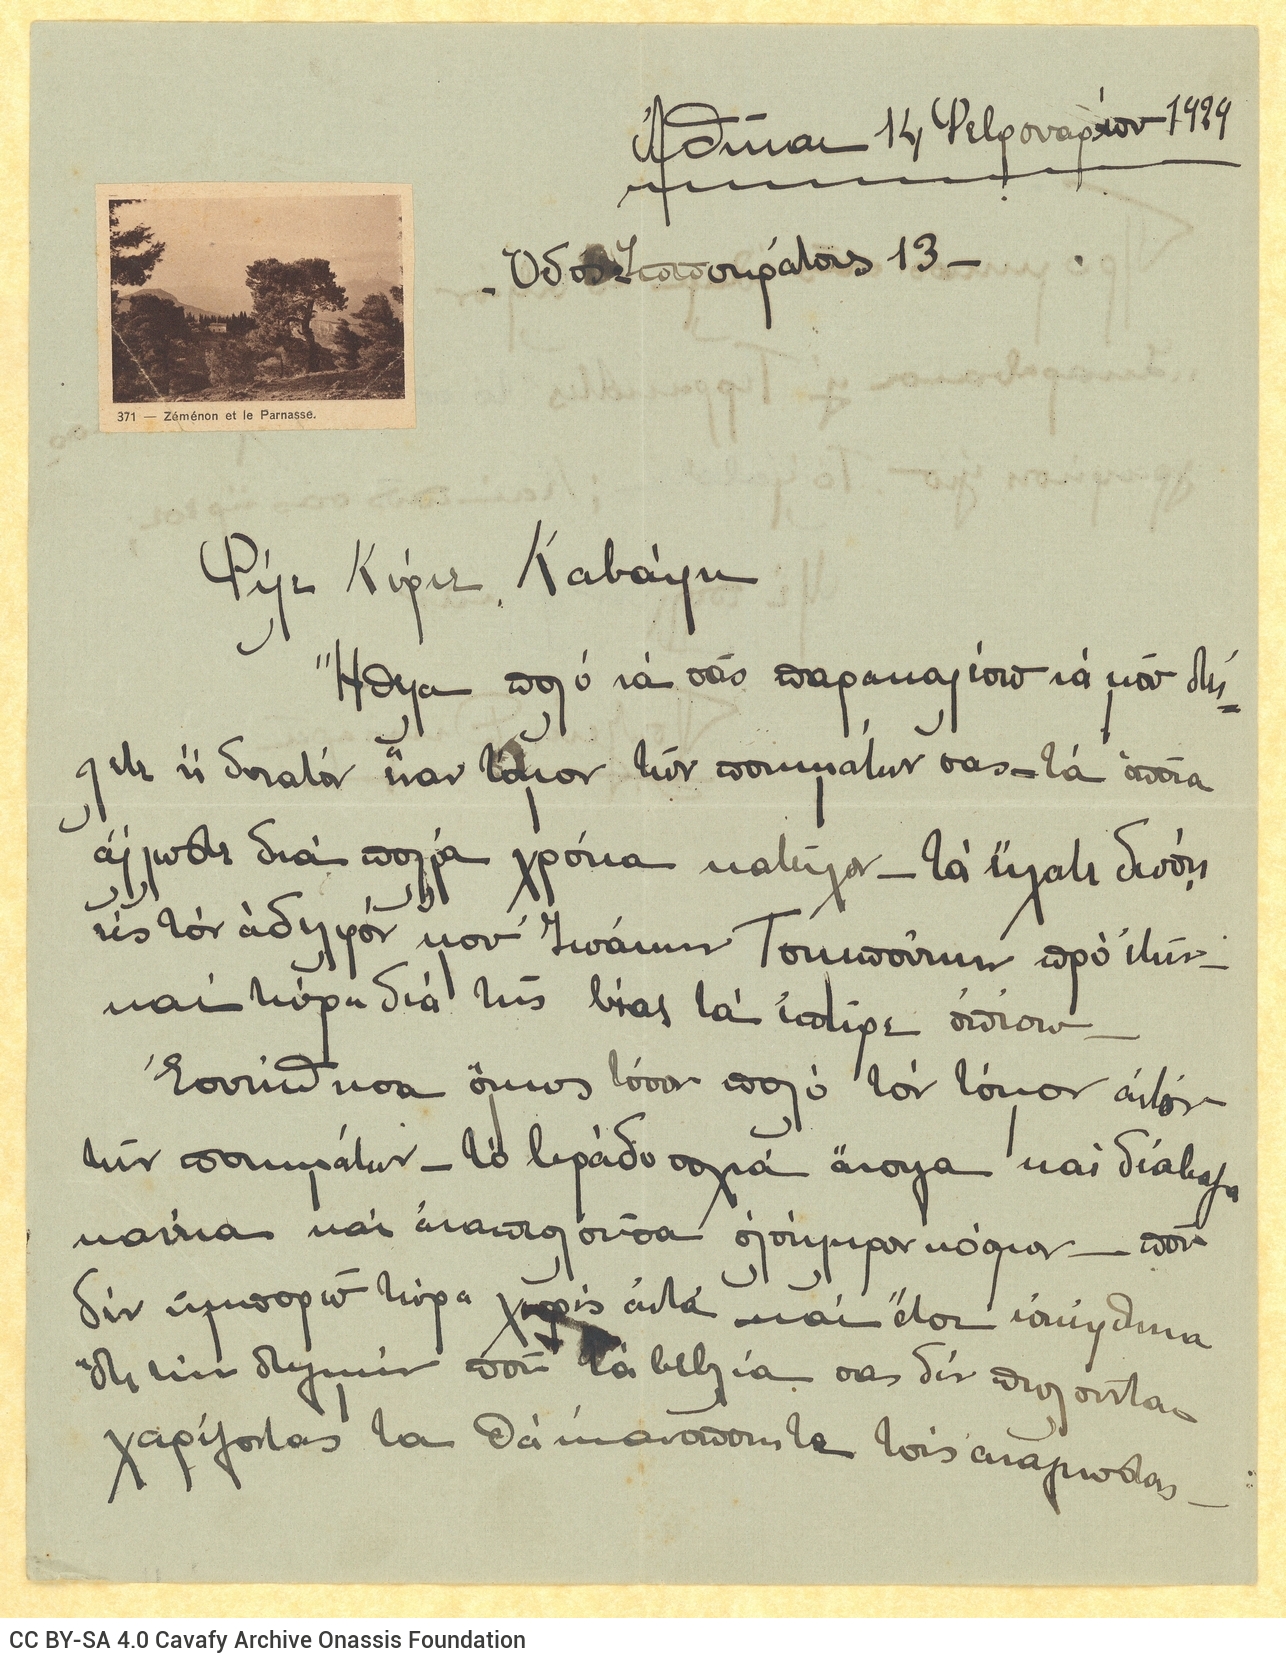 Χειρόγραφη επιστολή της Πολυξένης Δημαρά προς τον Καβάφη. Η επιστολ�